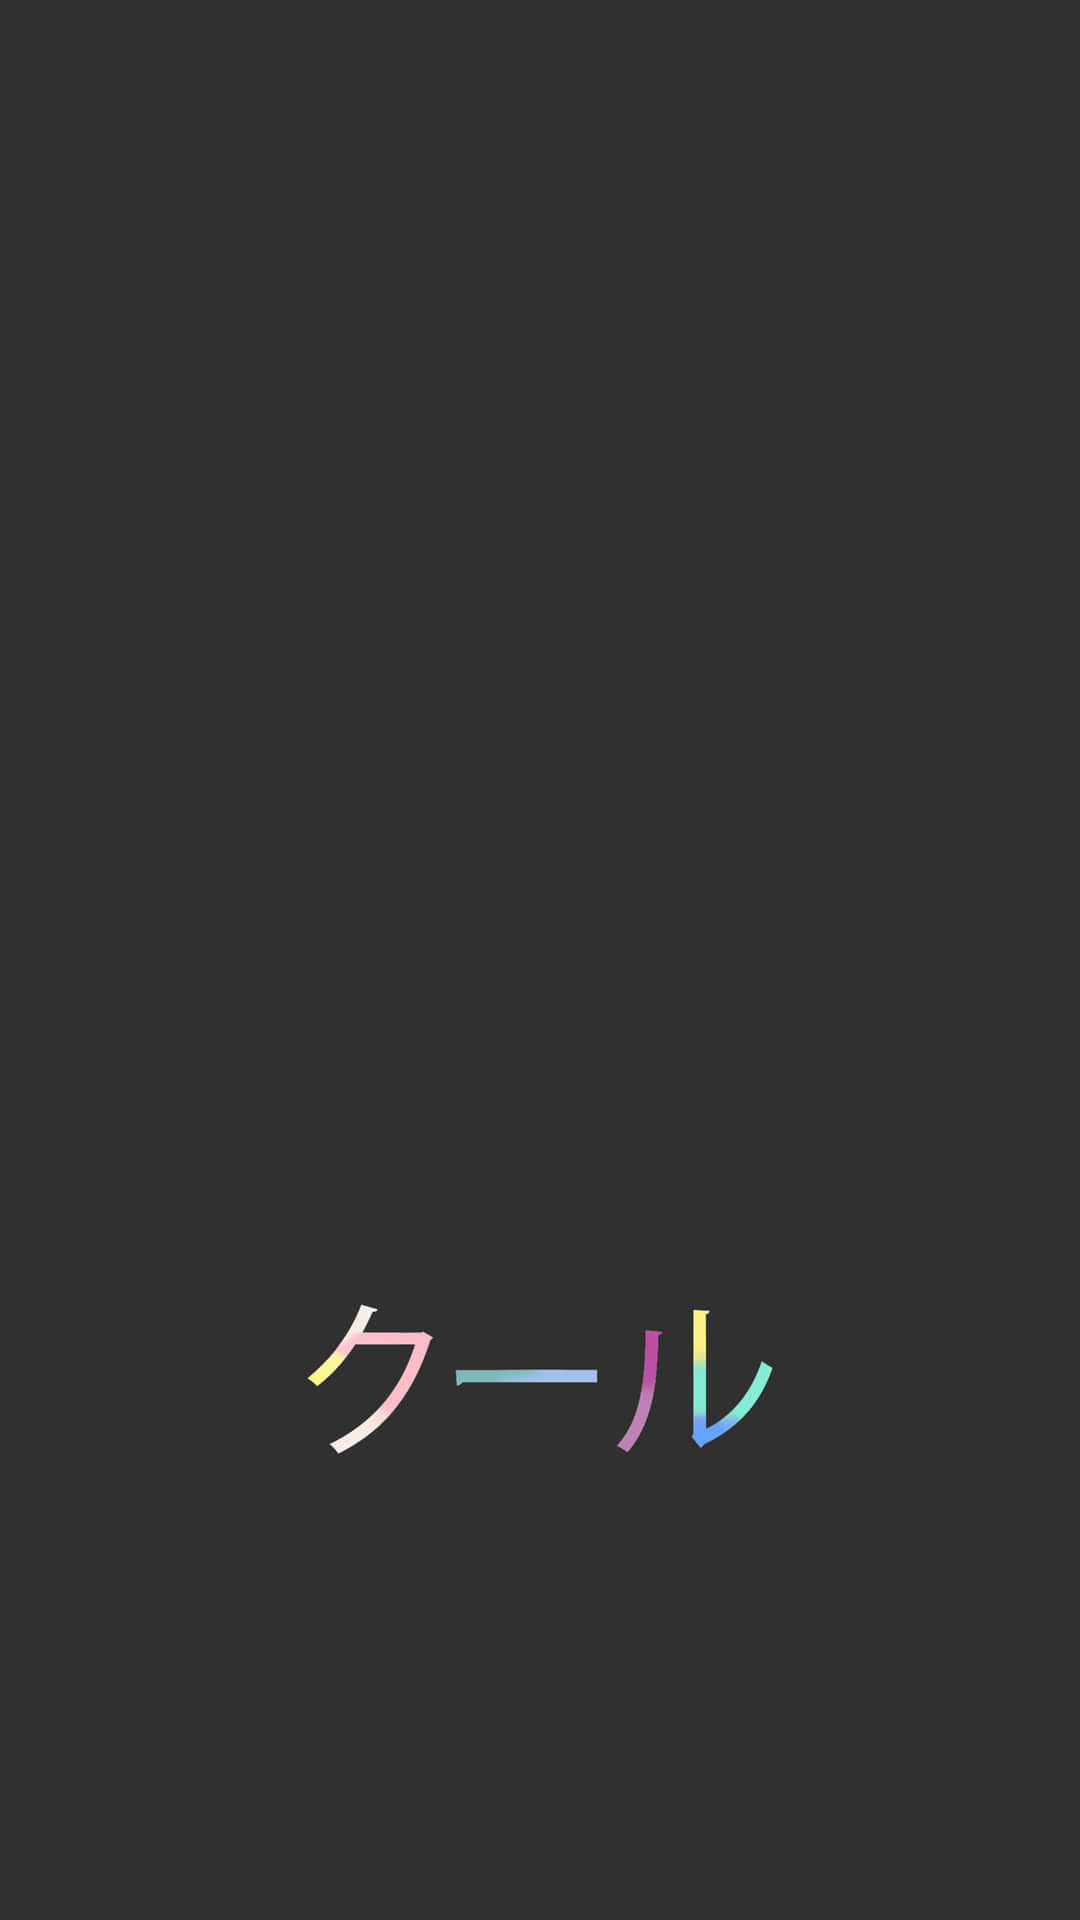 Omfamnaminimalism Med Denna Mörka Japanska Iphone Bakgrundsbild. Wallpaper